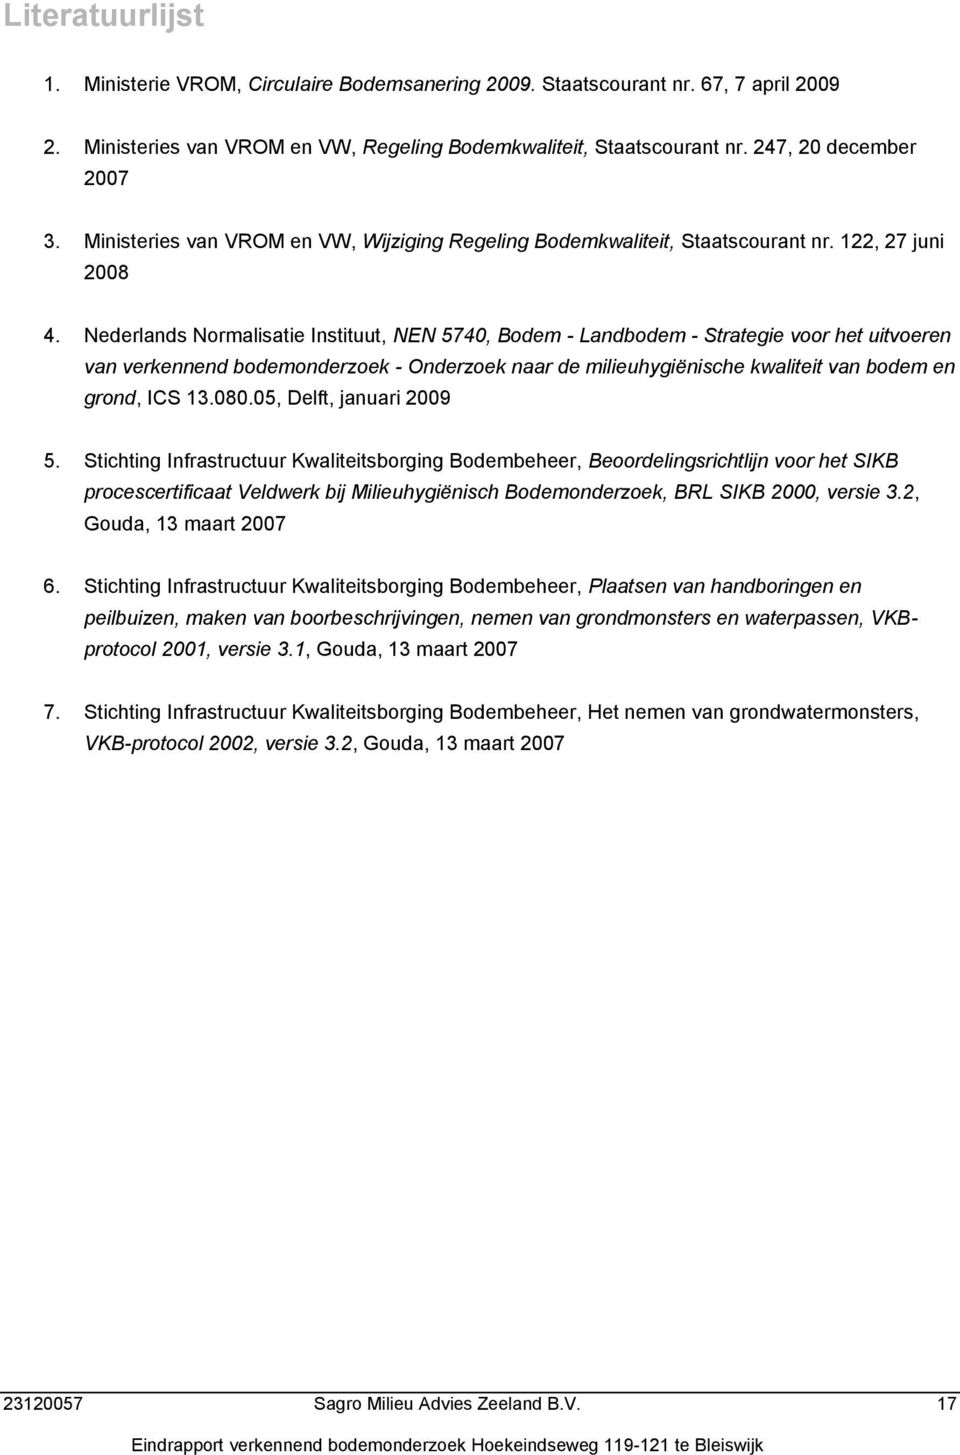 Nederlands Normalisatie Instituut, NEN 574, Bodem - Landbodem - Strategie voor het uitvoeren van verkennend bodemonderzoek - Onderzoek naar de milieuhygiënische kwaliteit van bodem en grond, ICS 3.8.